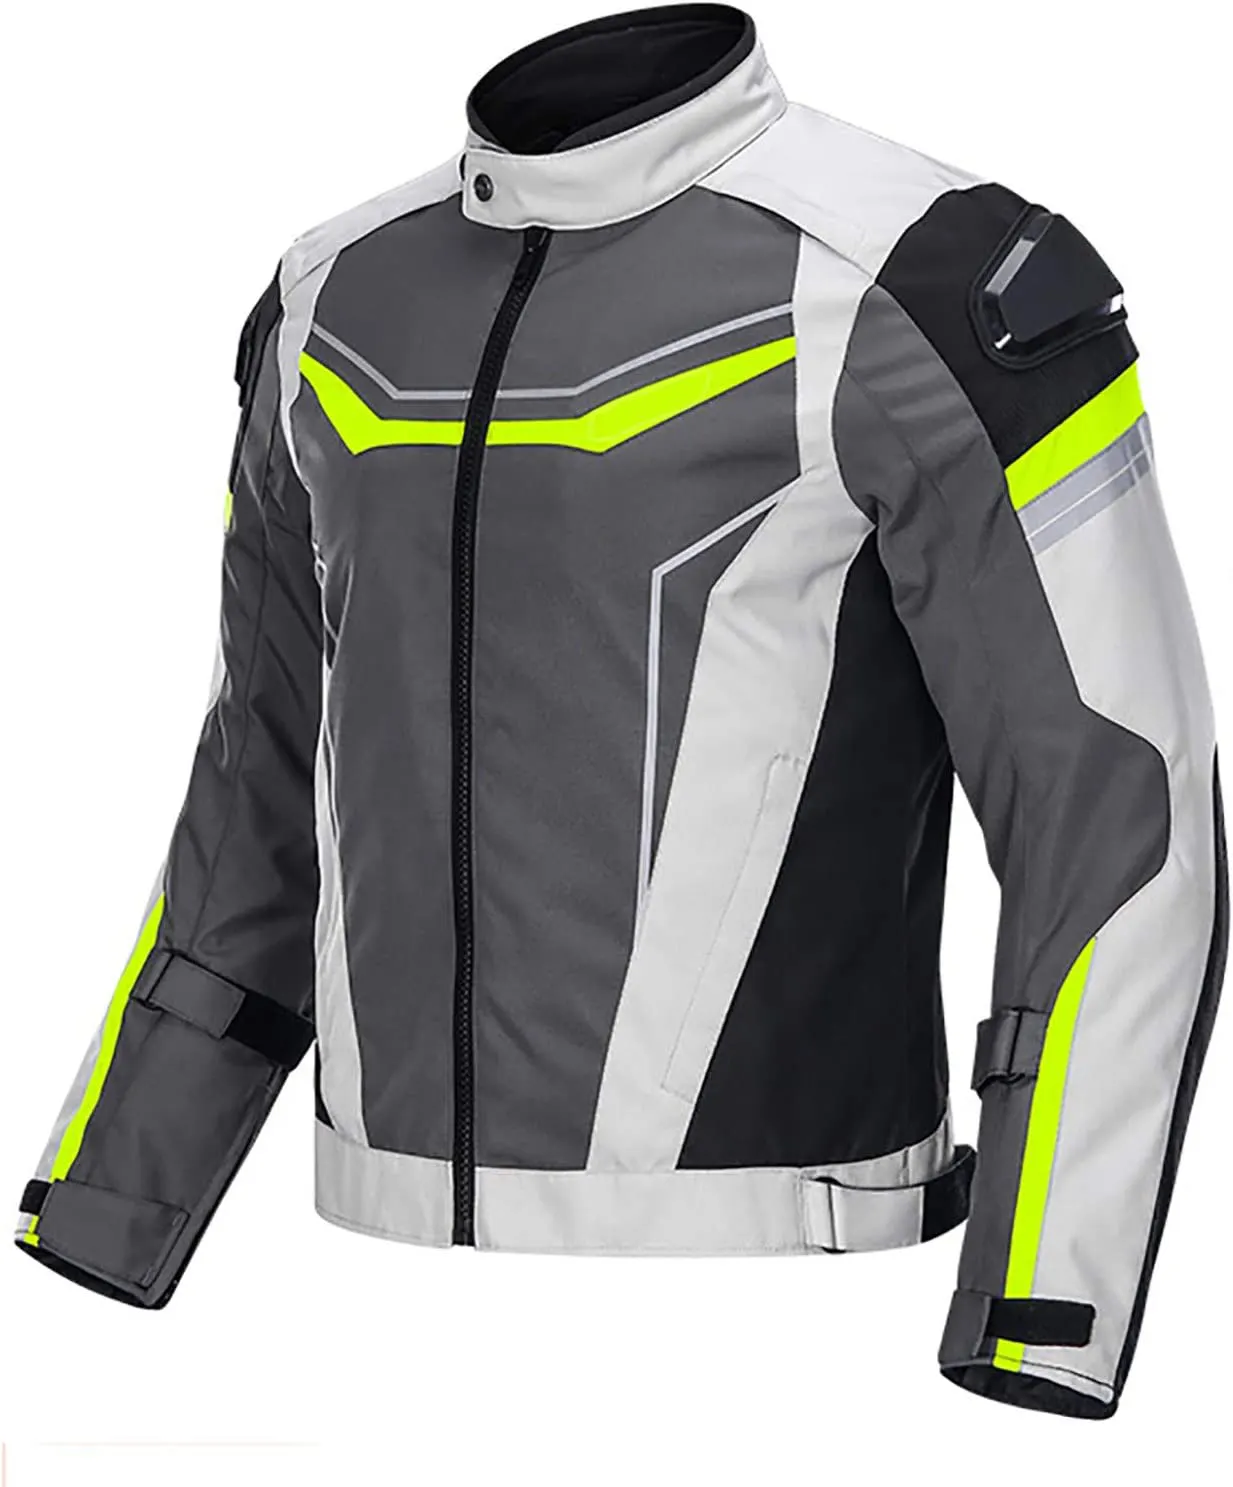 Benutzer definierte Großhandel Motorrad jacke für Männer Motorrad jacke Cardura Racing Biker Riding Motocross Jacke